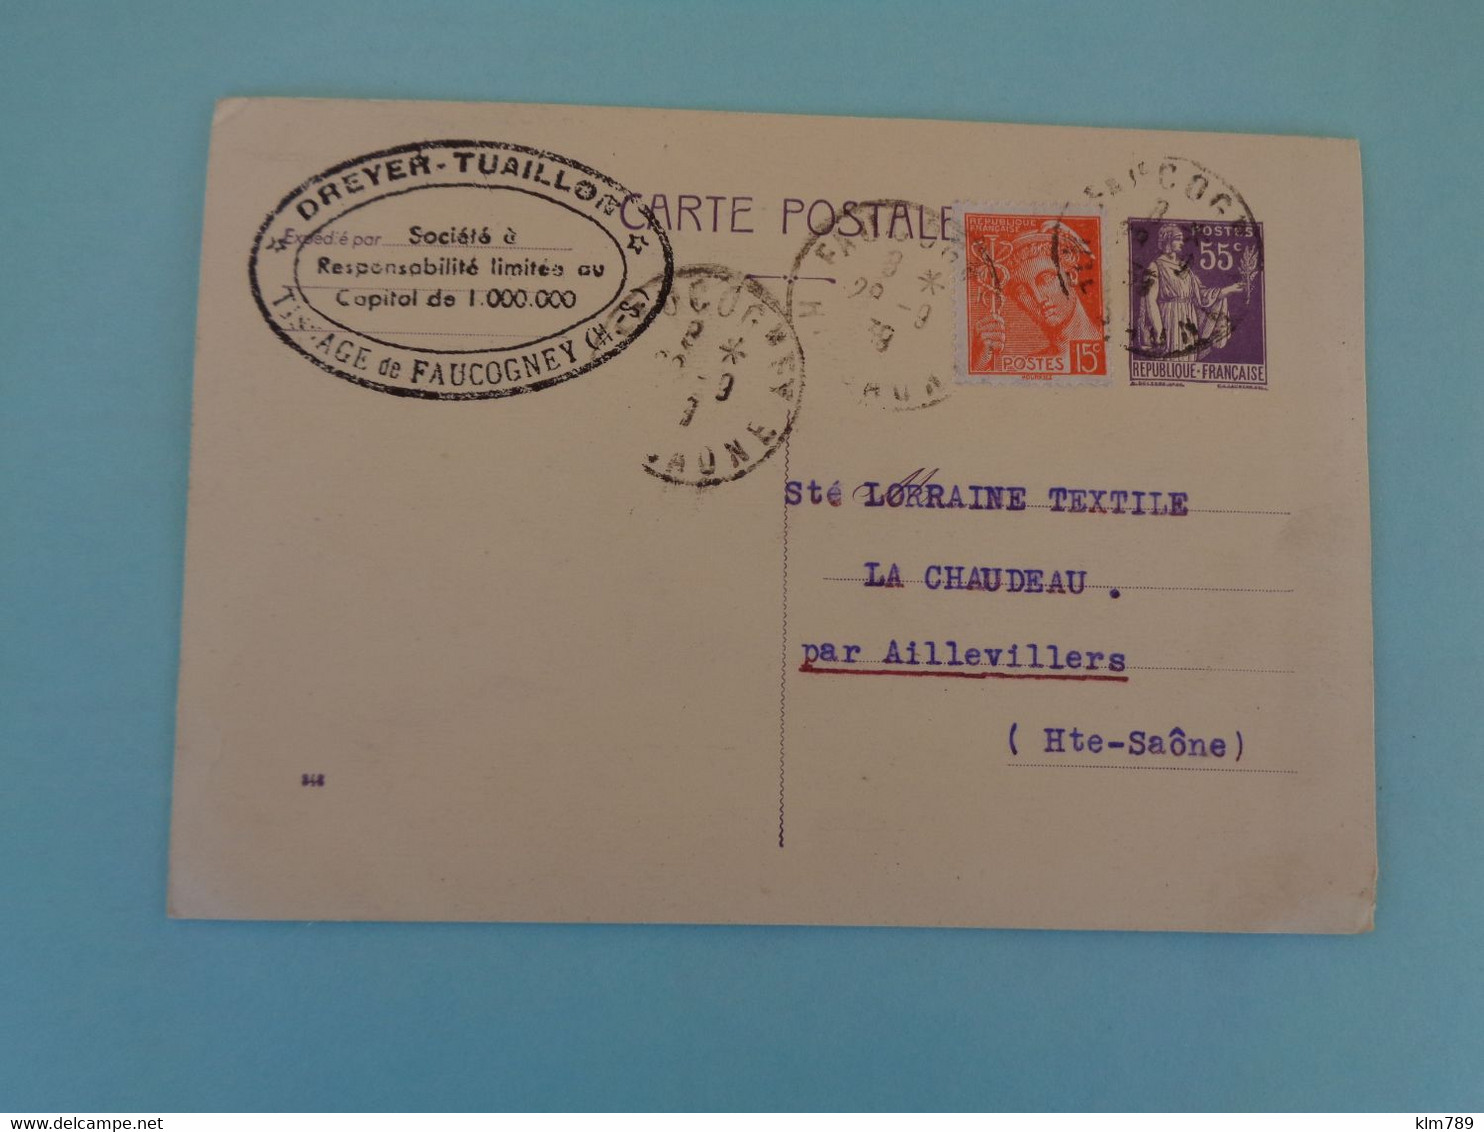 70 - Haute Saone - Faucogney - Carte Pro/ Pub - Dreyer - Tuaillon - Tissage - 1939 - Philatélie - - Faucogney